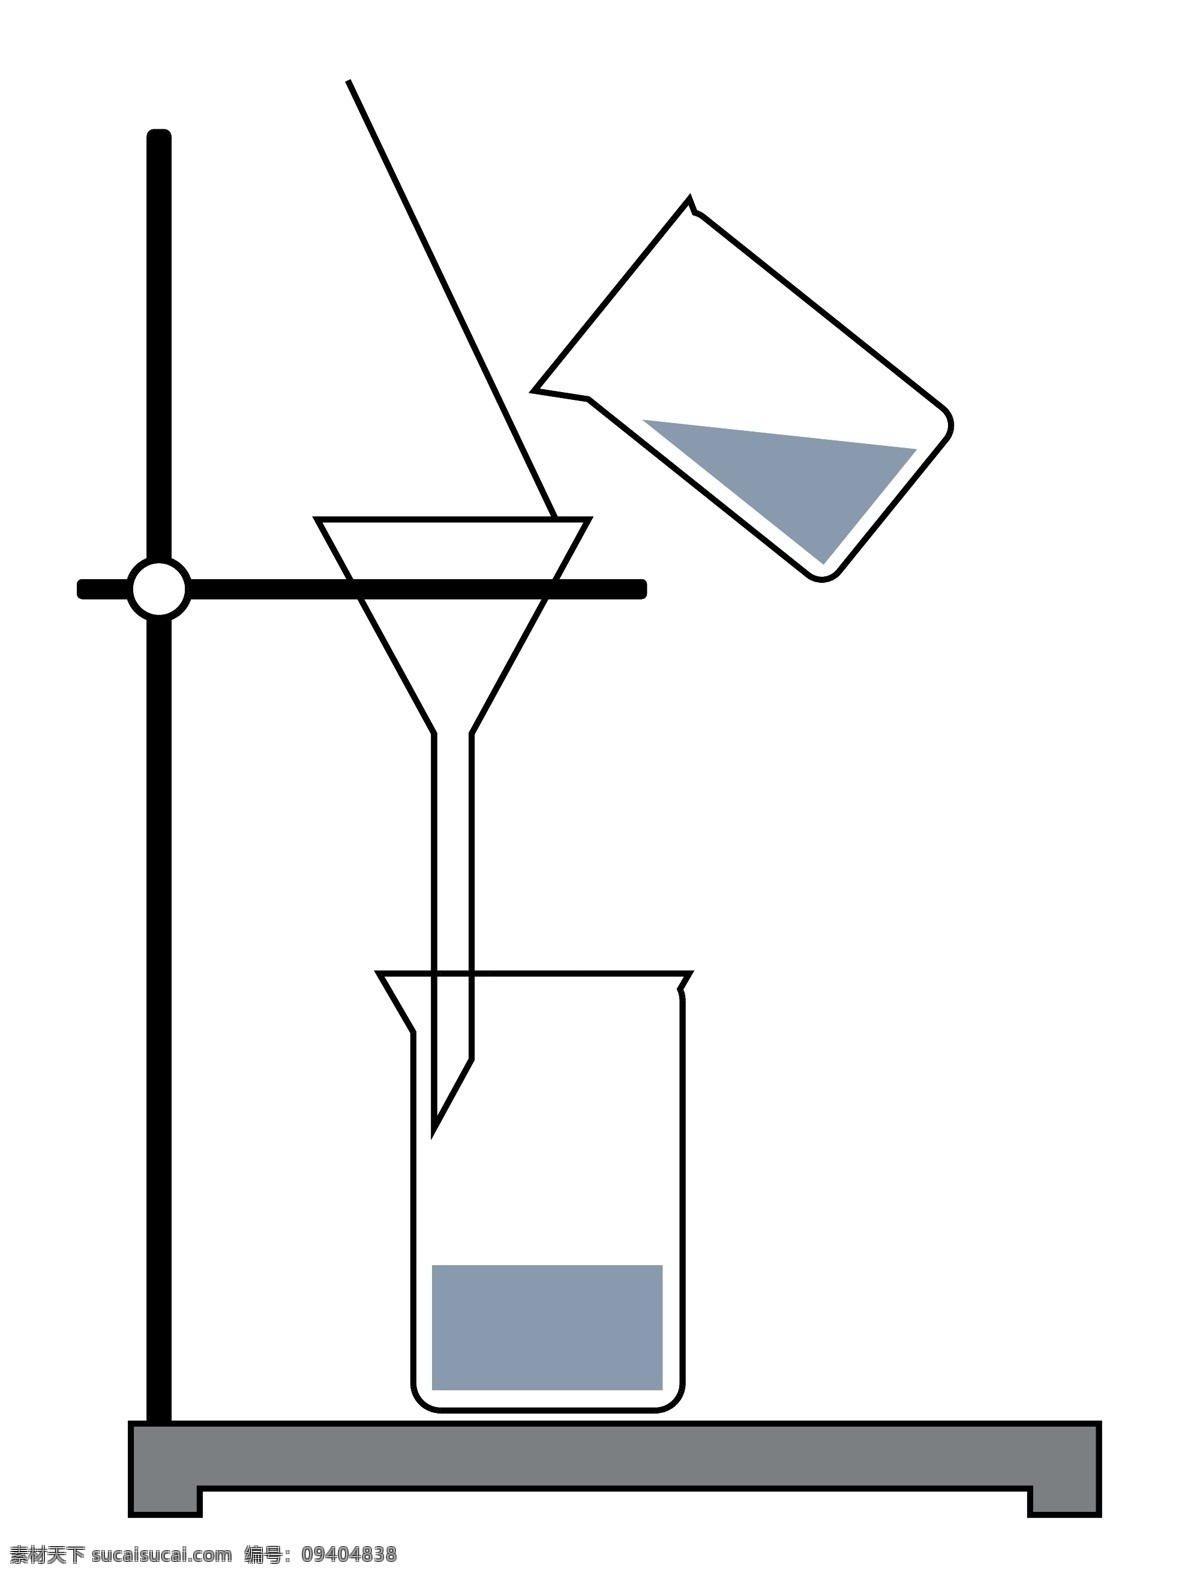 矢量 化学 仪器 漏斗 烧杯 搅拌 棒 免 抠 化学仪器 搅拌棒 大烧杯 溶液 化学液体 调配液体 化学实验 架子